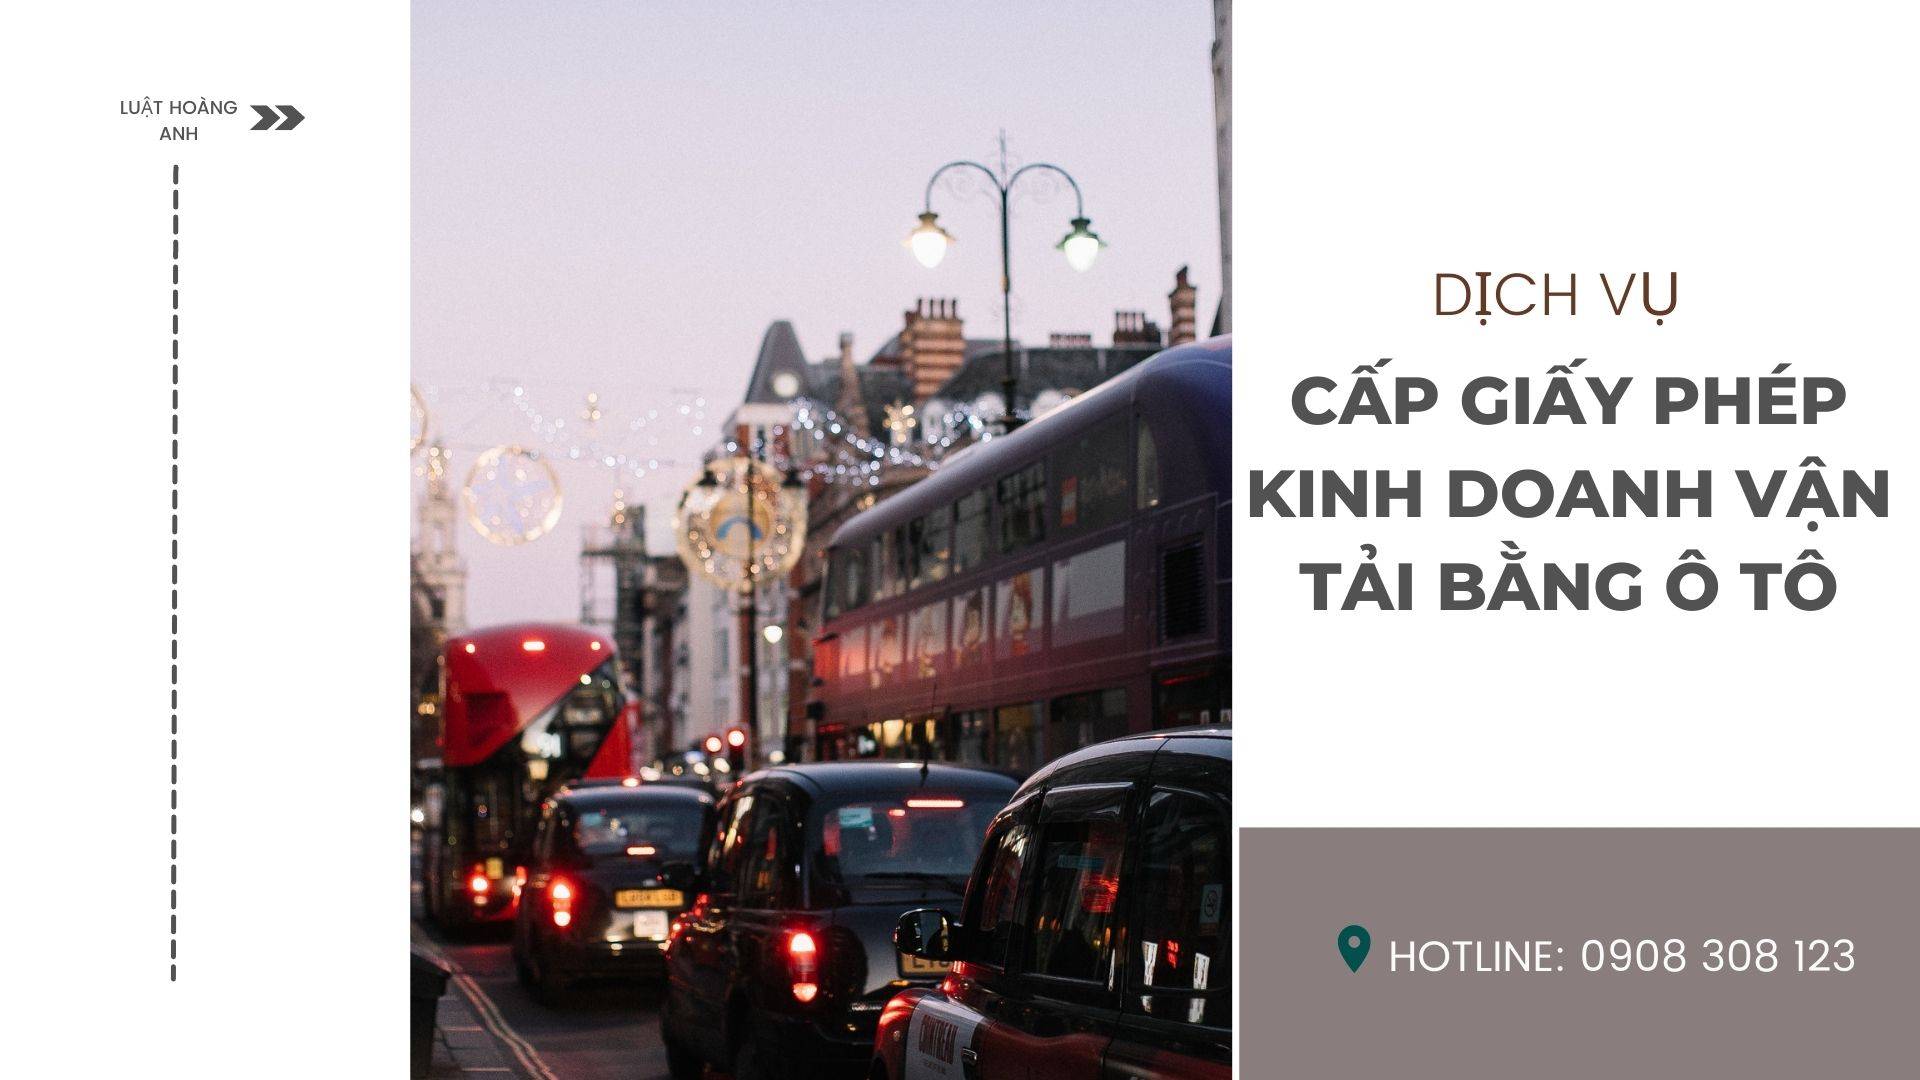 Dịch vụ cấp giấy phép kinh doanh vận tải bằng ô tô tại thành phố Hồ Chí Minh